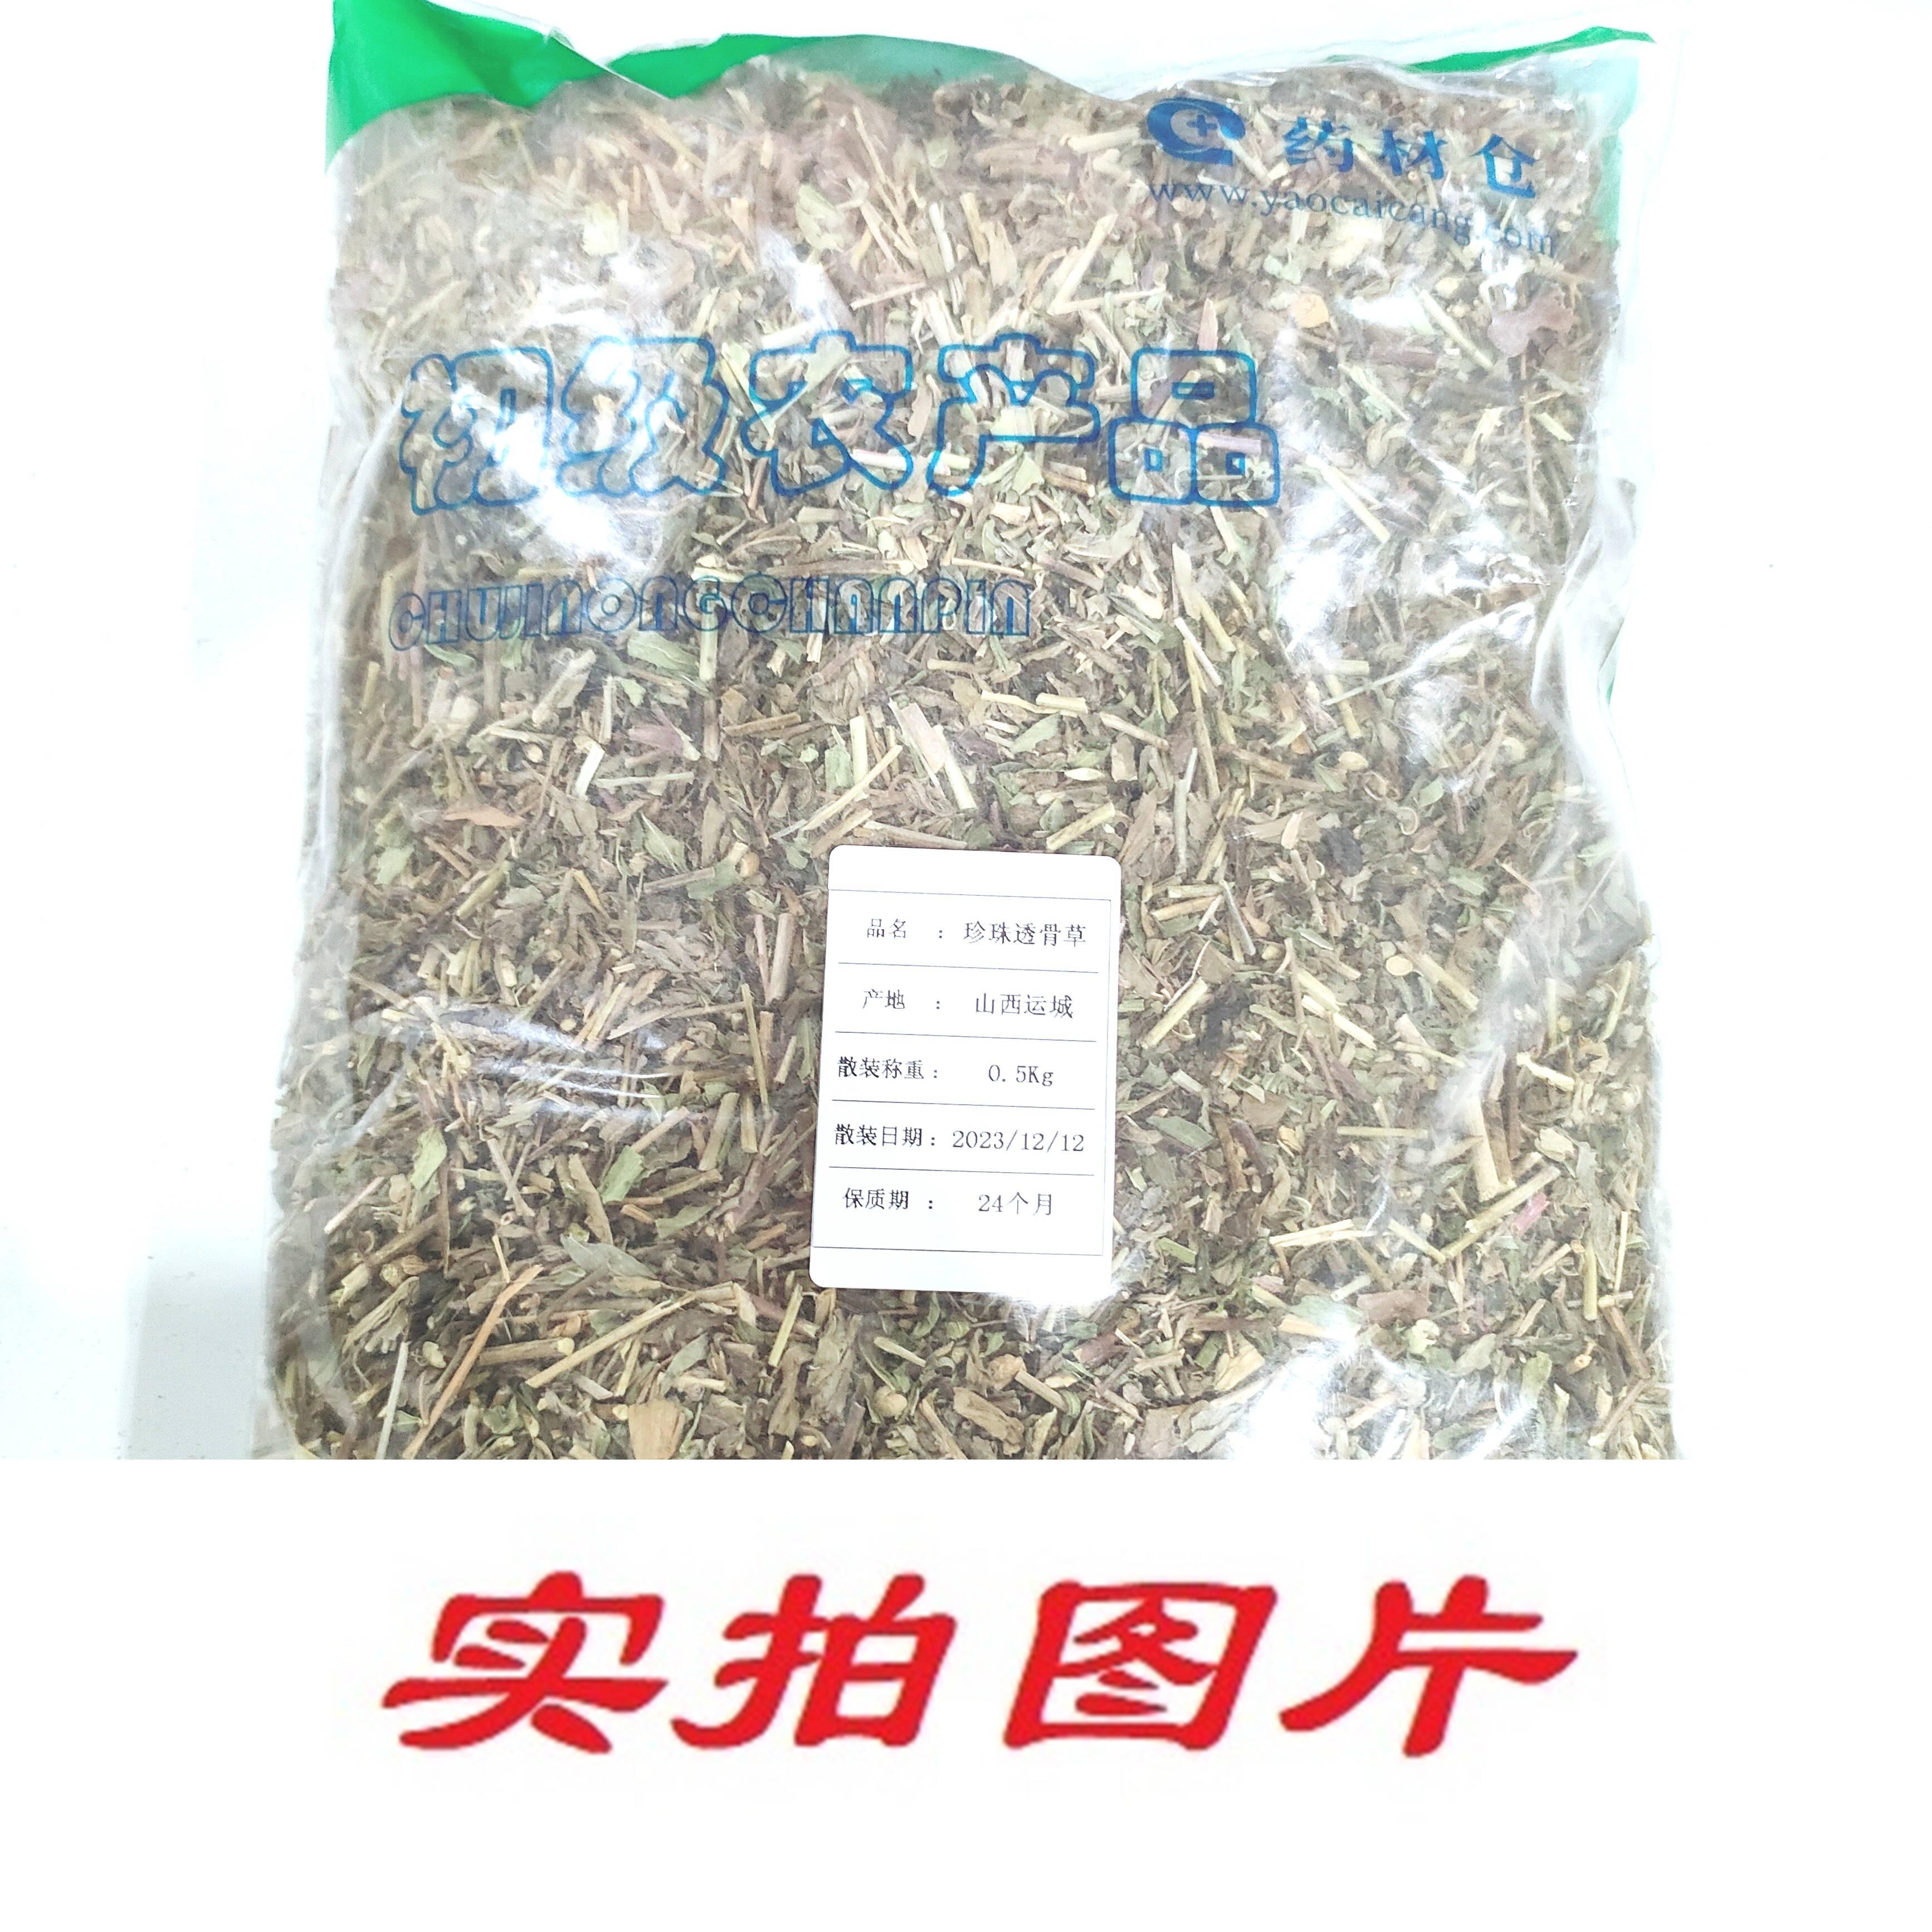 【】珍珠透骨草0.5kg-农副产品